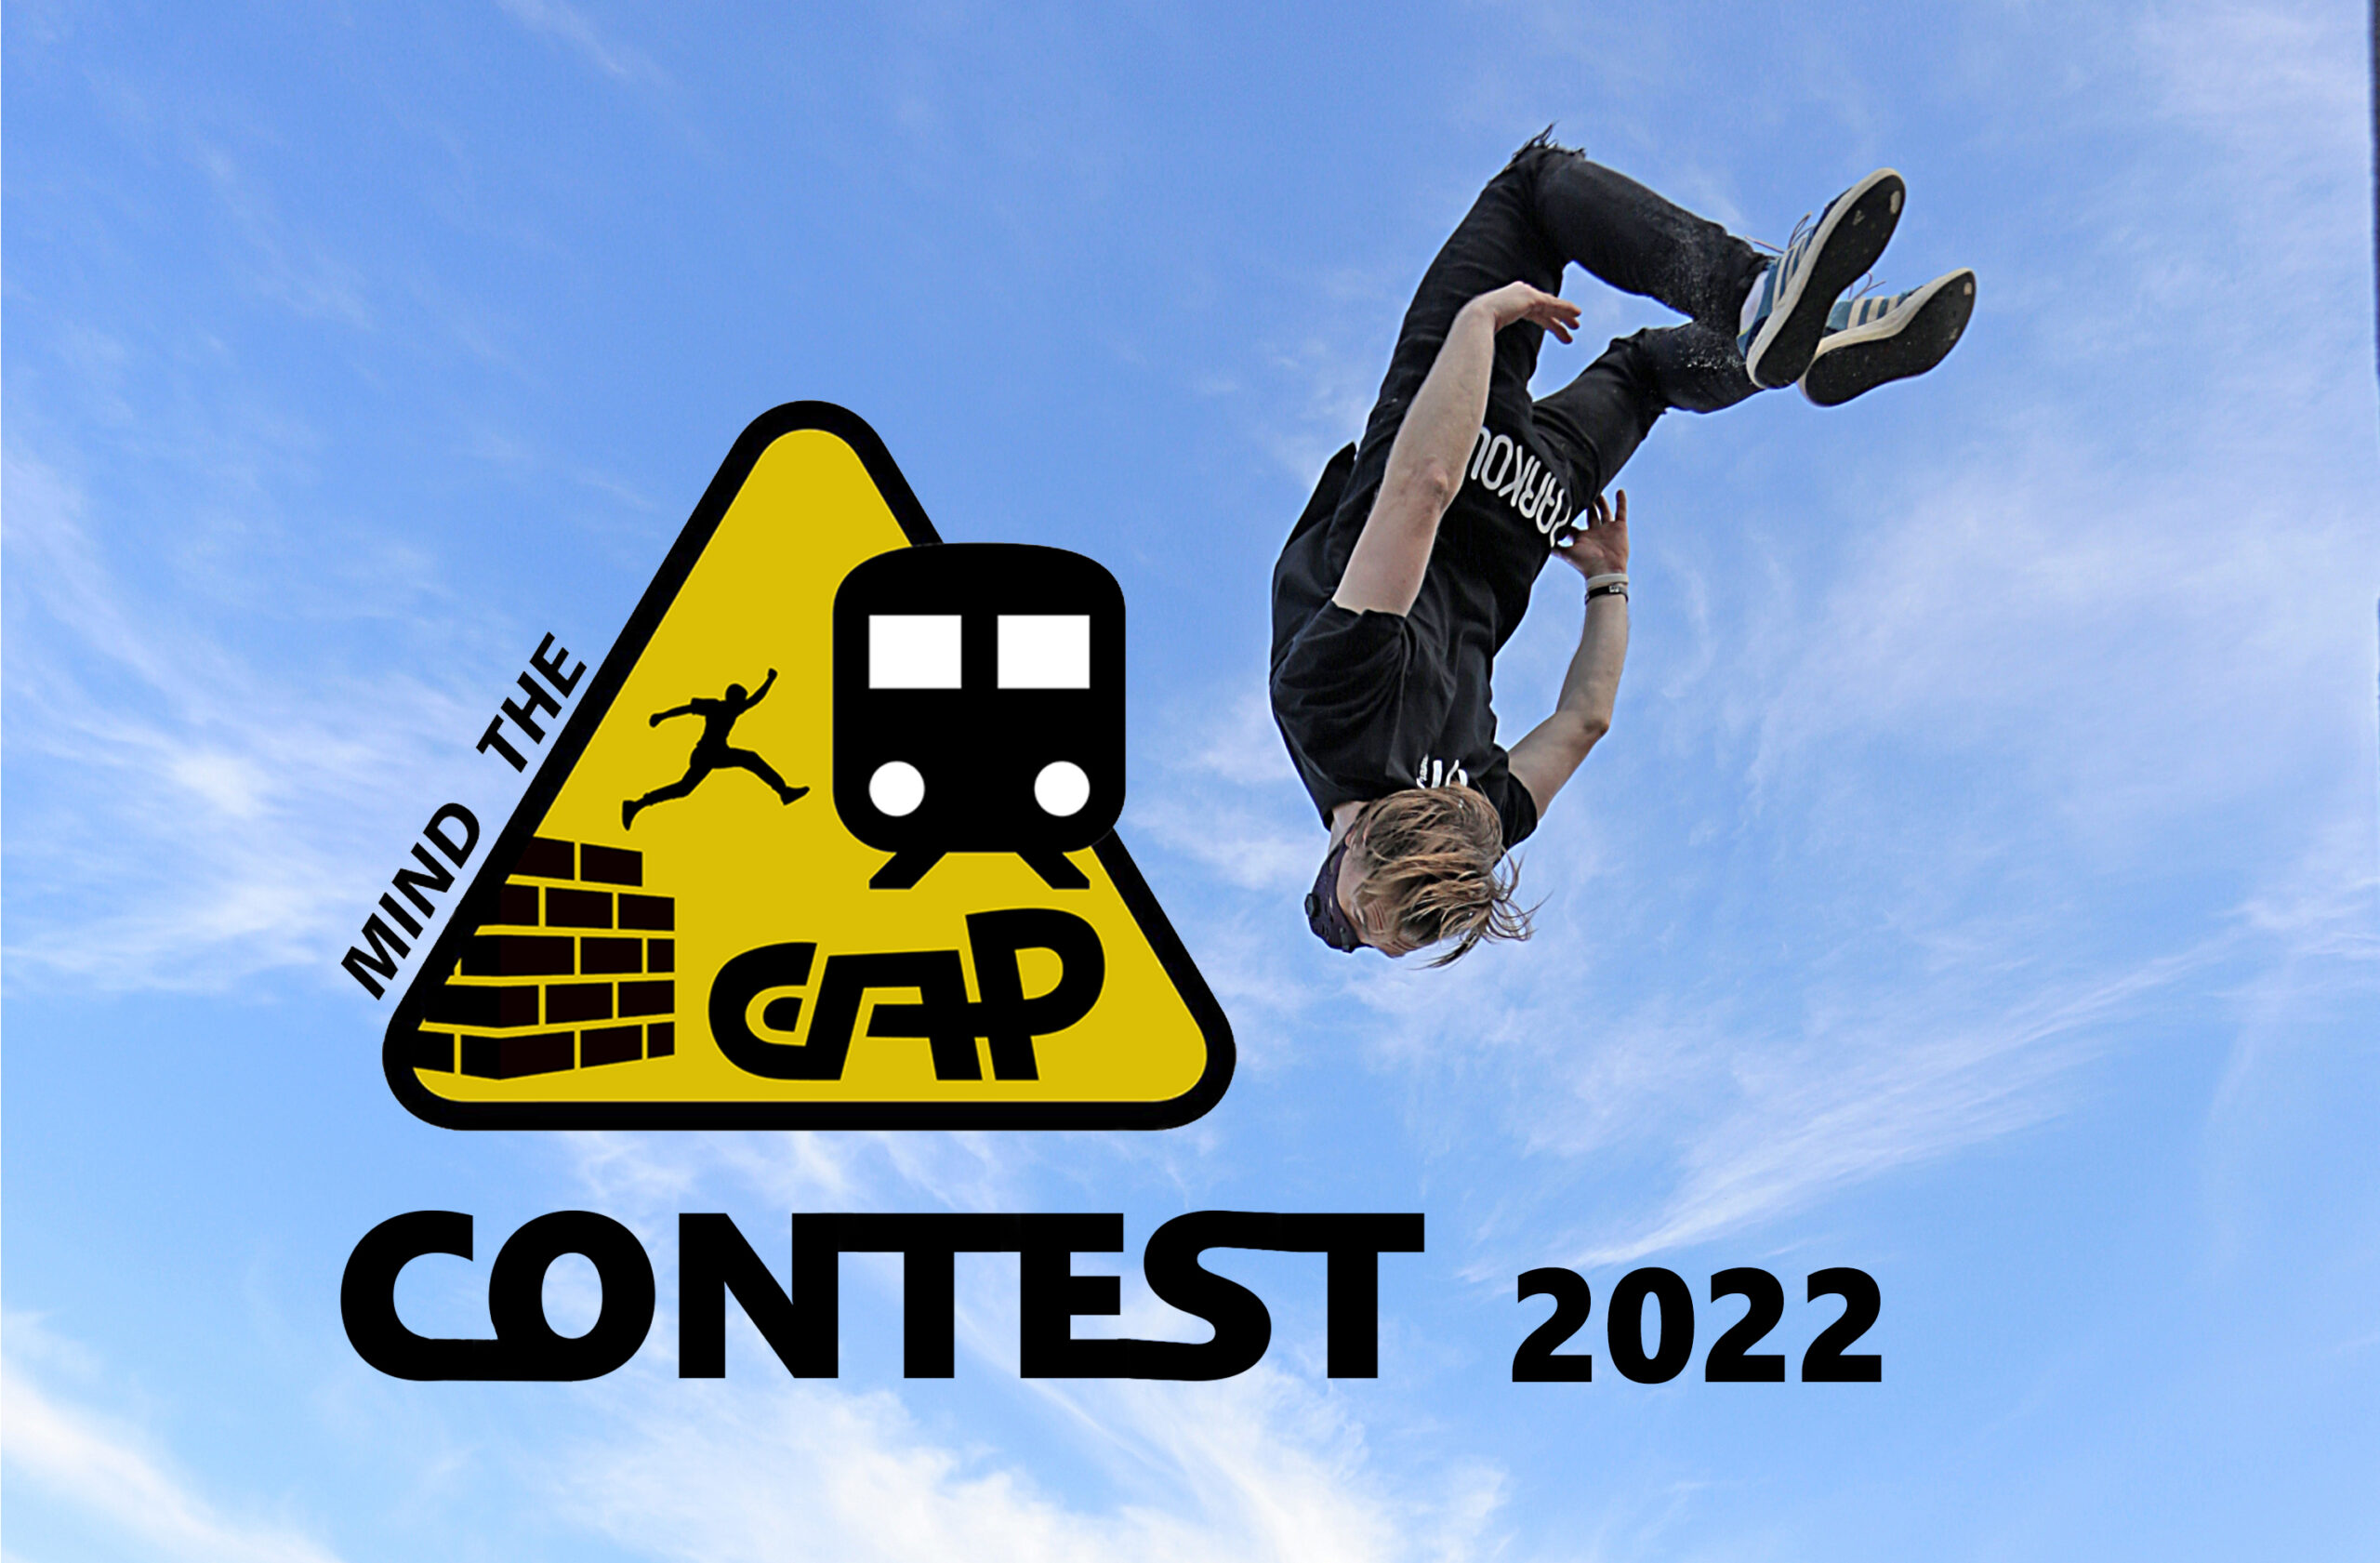 plakat gap contest 2022